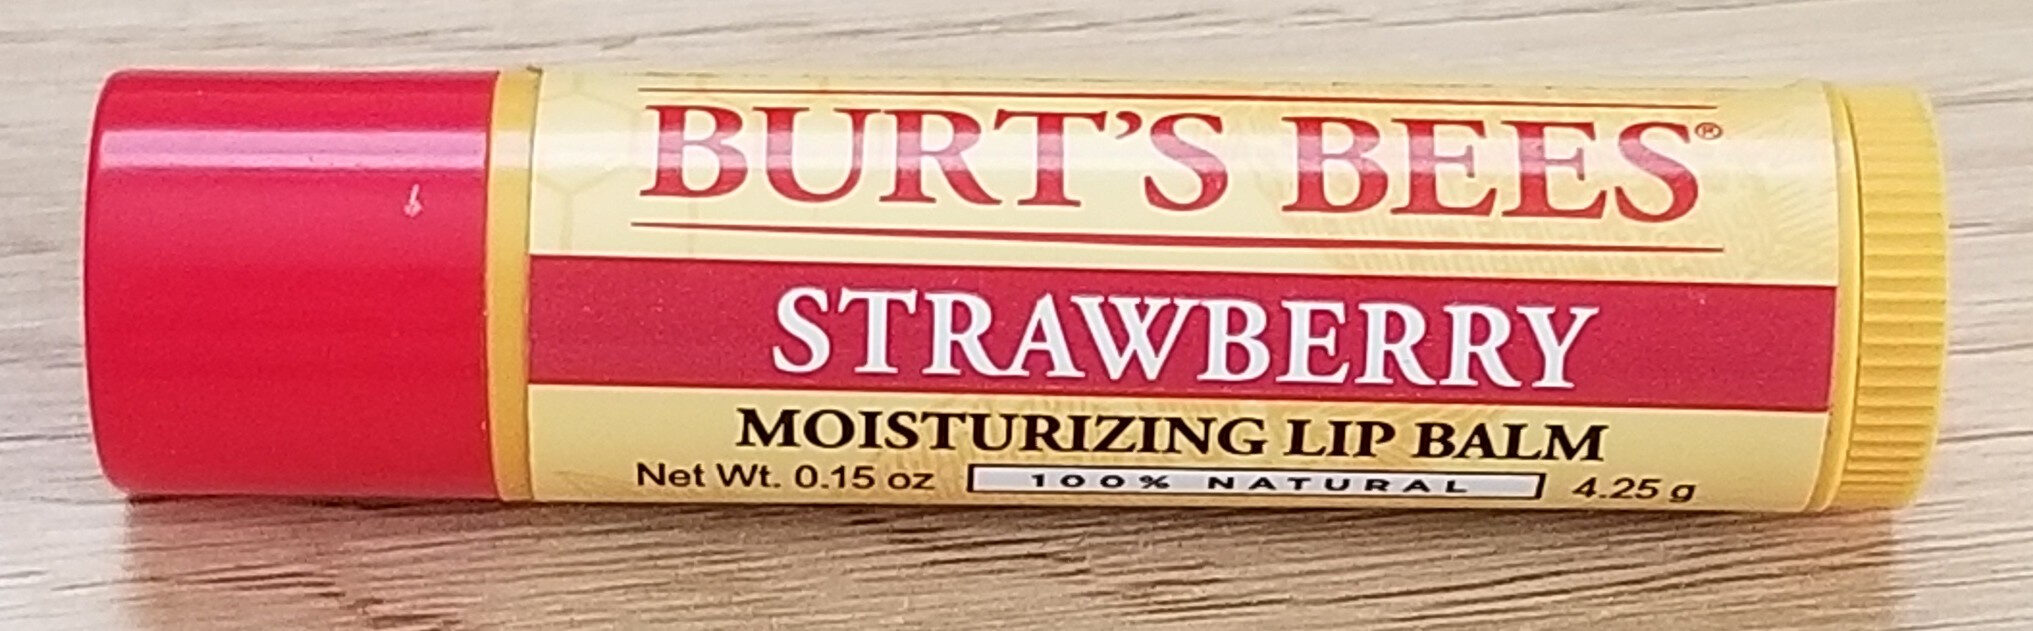 Strawberry Moisturizing Lip Balm - Produit - en